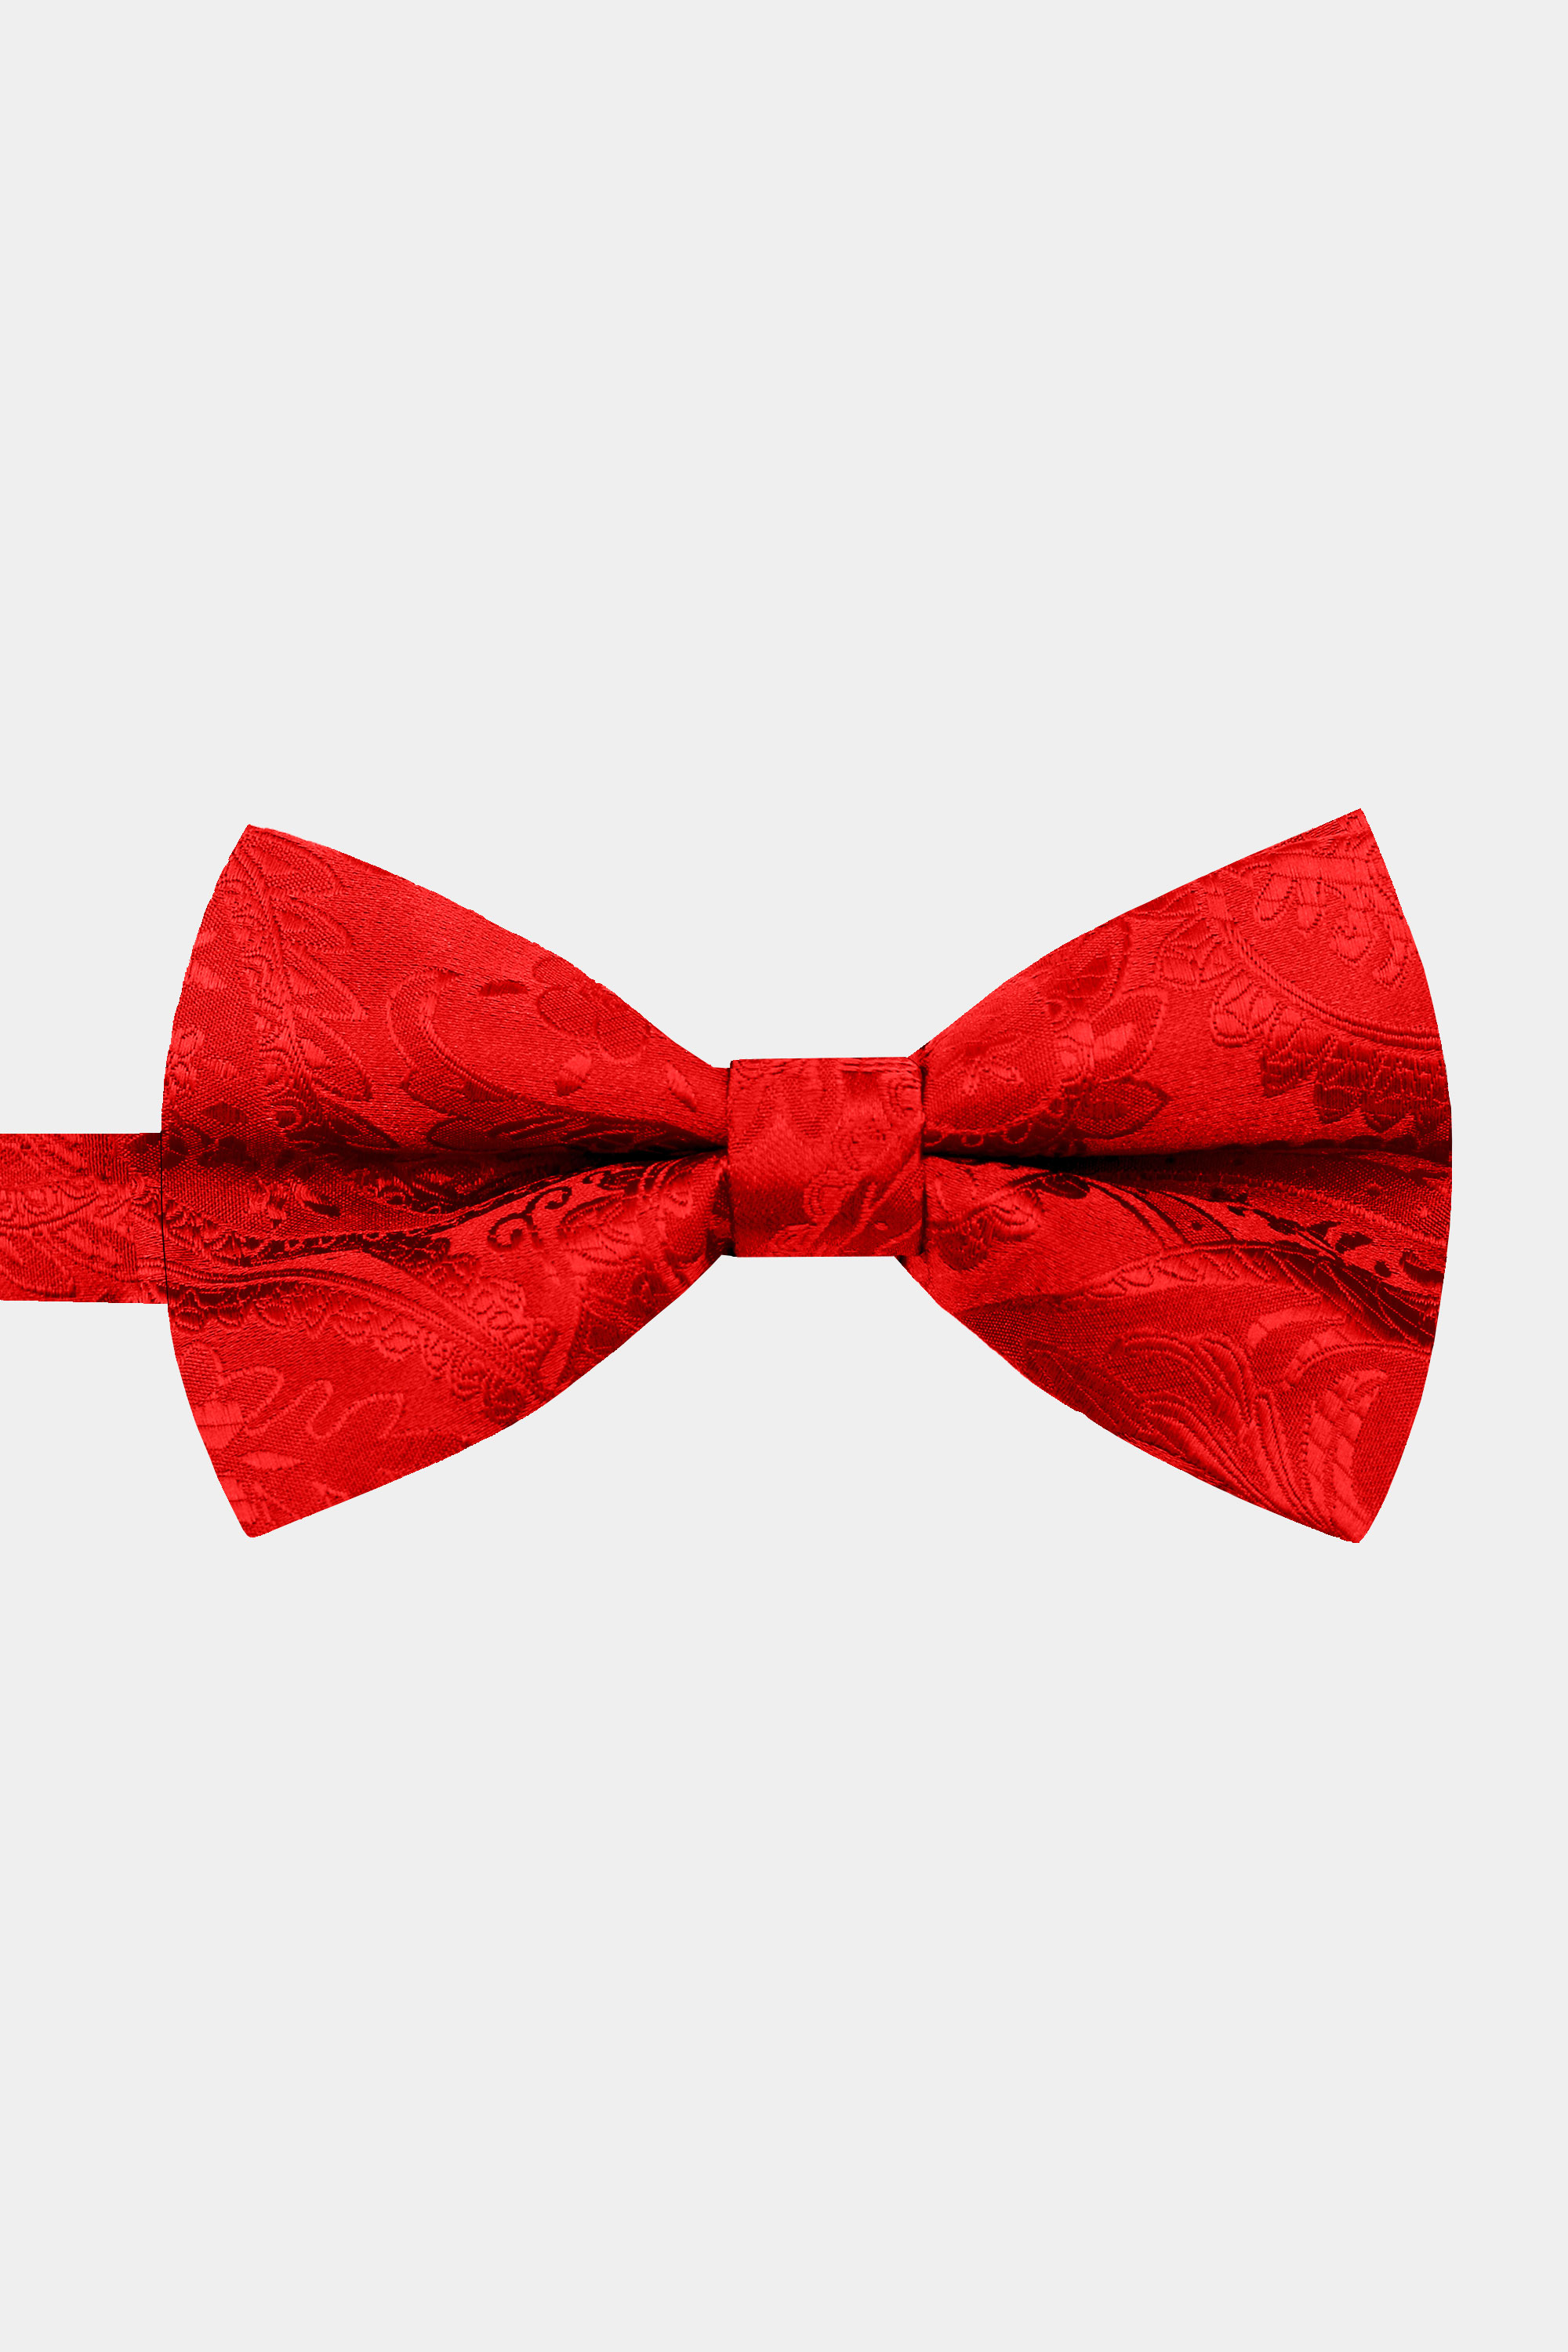 Paisley-Red-Bow-Tie-from-Gentlemansguru.Com